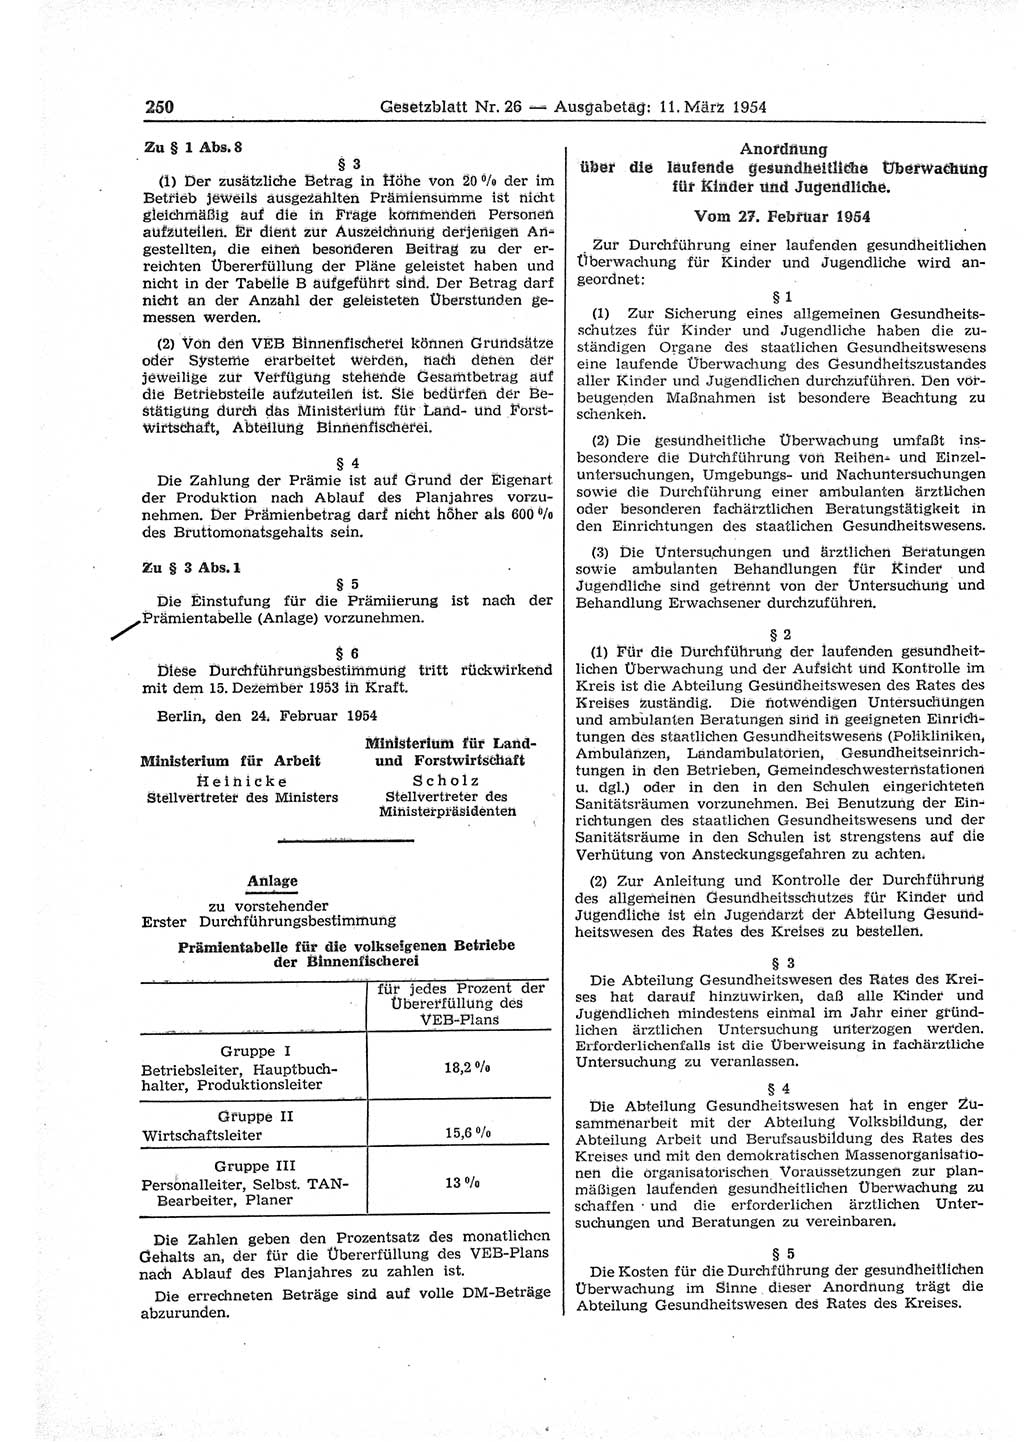 Gesetzblatt (GBl.) der Deutschen Demokratischen Republik (DDR) 1954, Seite 250 (GBl. DDR 1954, S. 250)